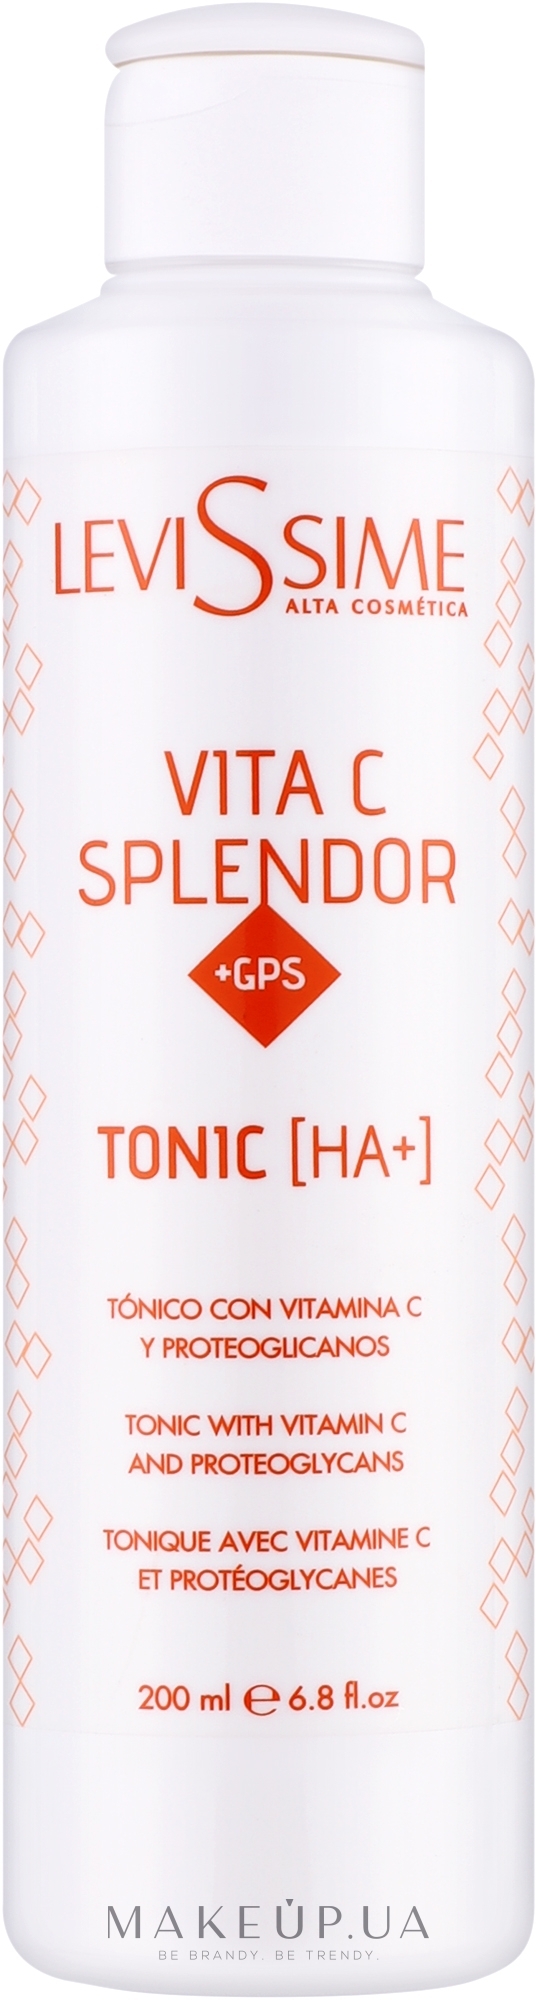 Тоник с витамином С - LeviSsime Vita C Splendor + GPS Tonic [HA +] — фото 200ml